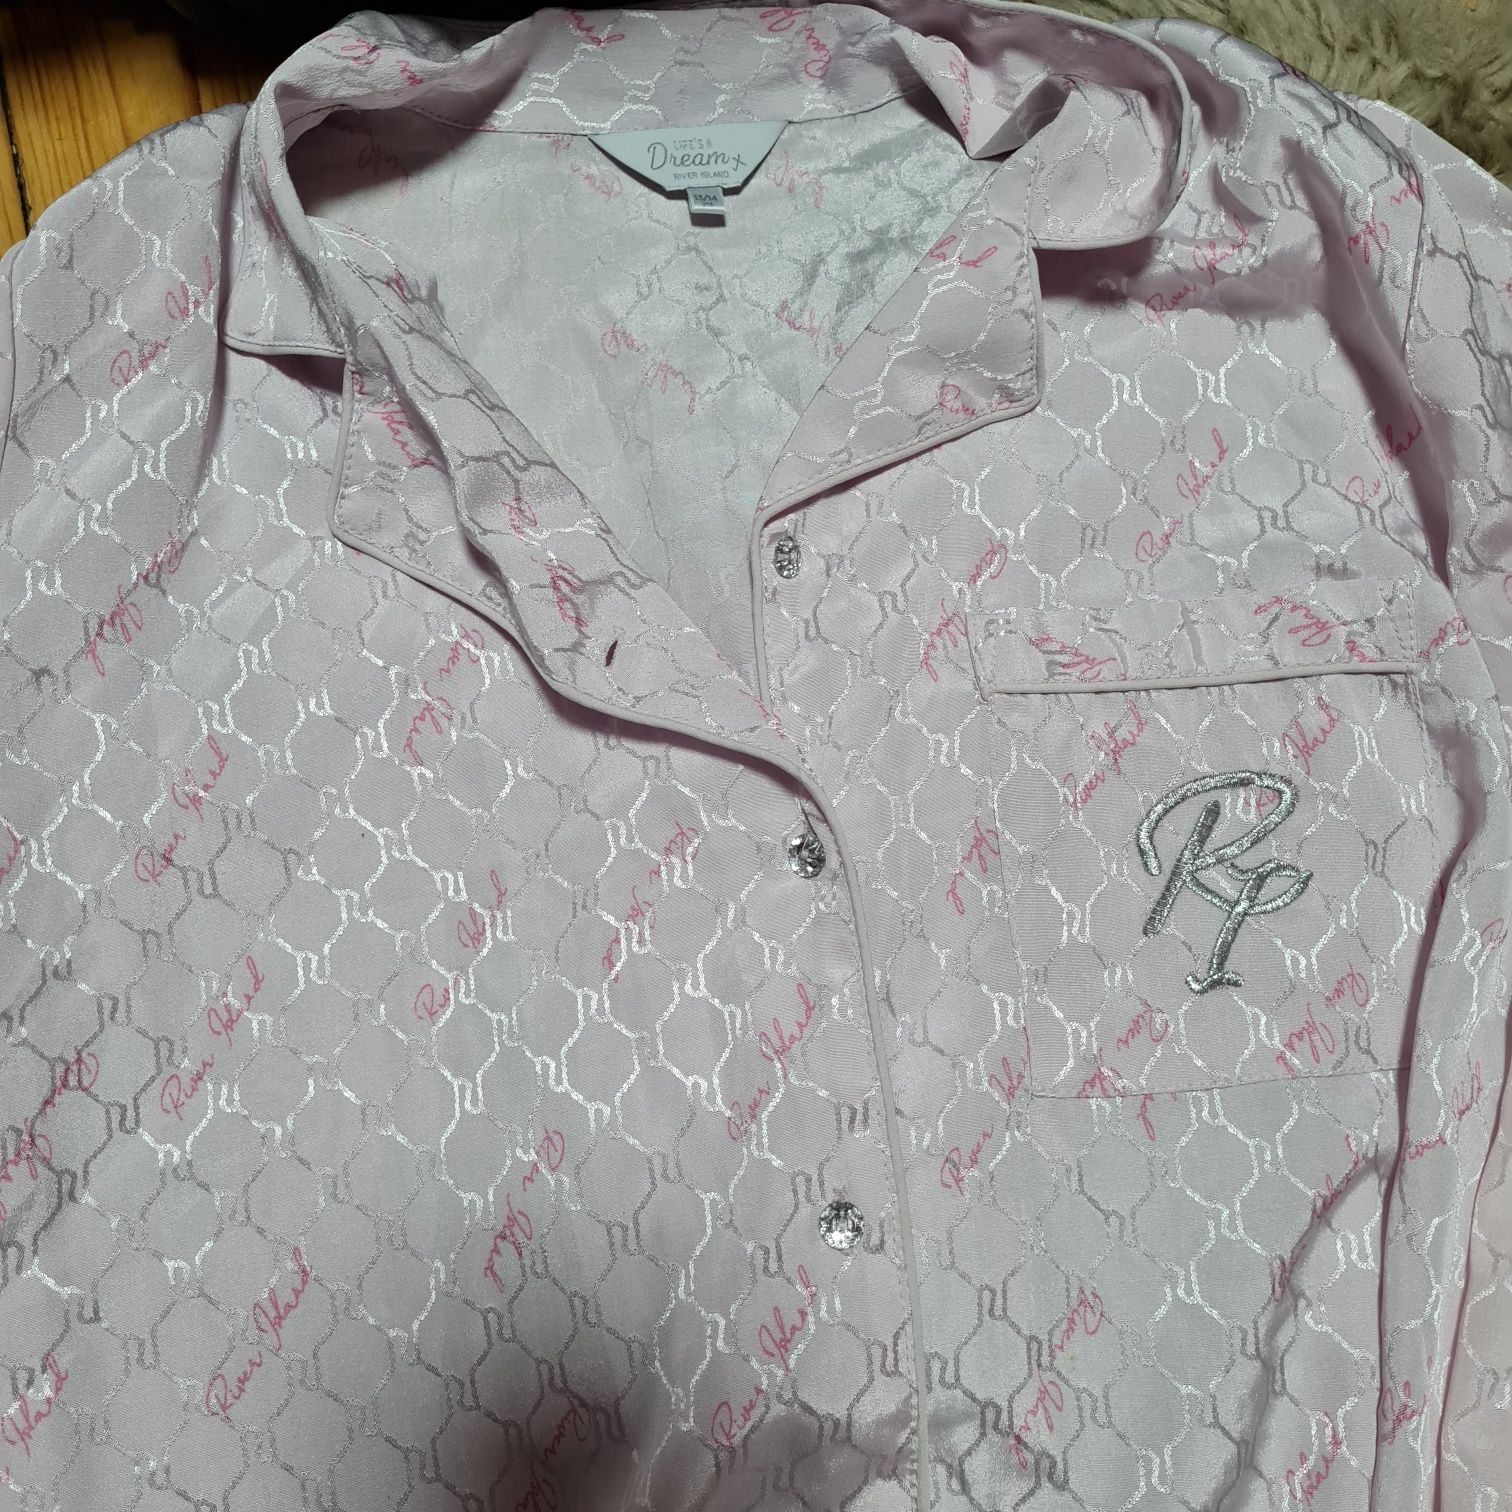 River Island piżama zestaw różowa satynowa bardzo przyjemna r. S 14 la